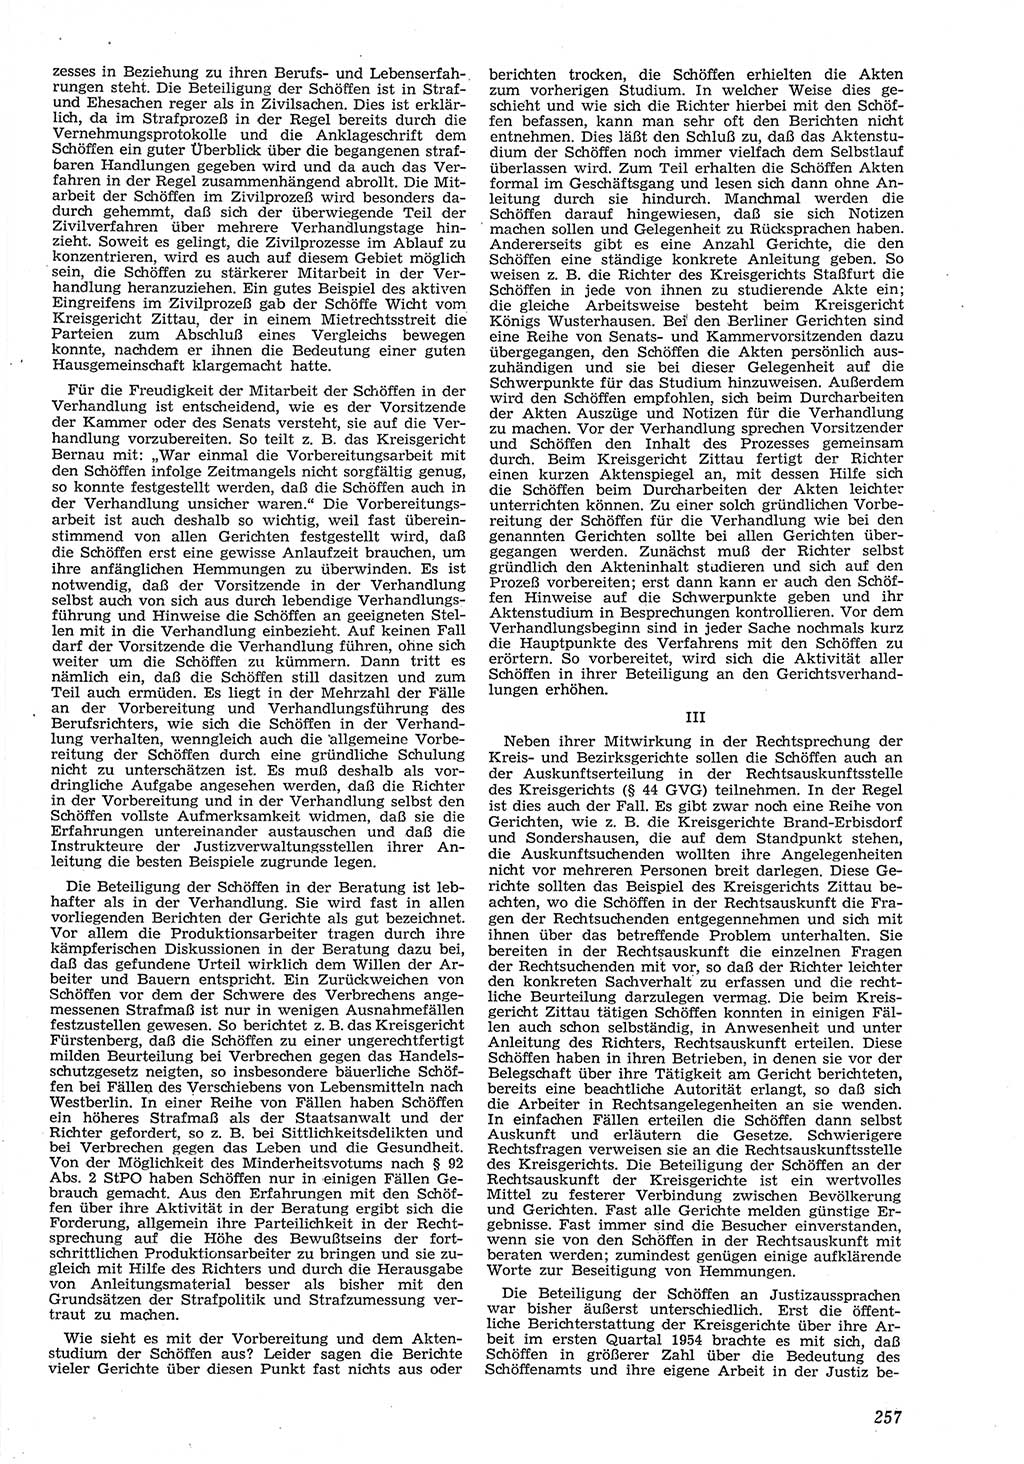 Neue Justiz (NJ), Zeitschrift für Recht und Rechtswissenschaft [Deutsche Demokratische Republik (DDR)], 8. Jahrgang 1954, Seite 257 (NJ DDR 1954, S. 257)